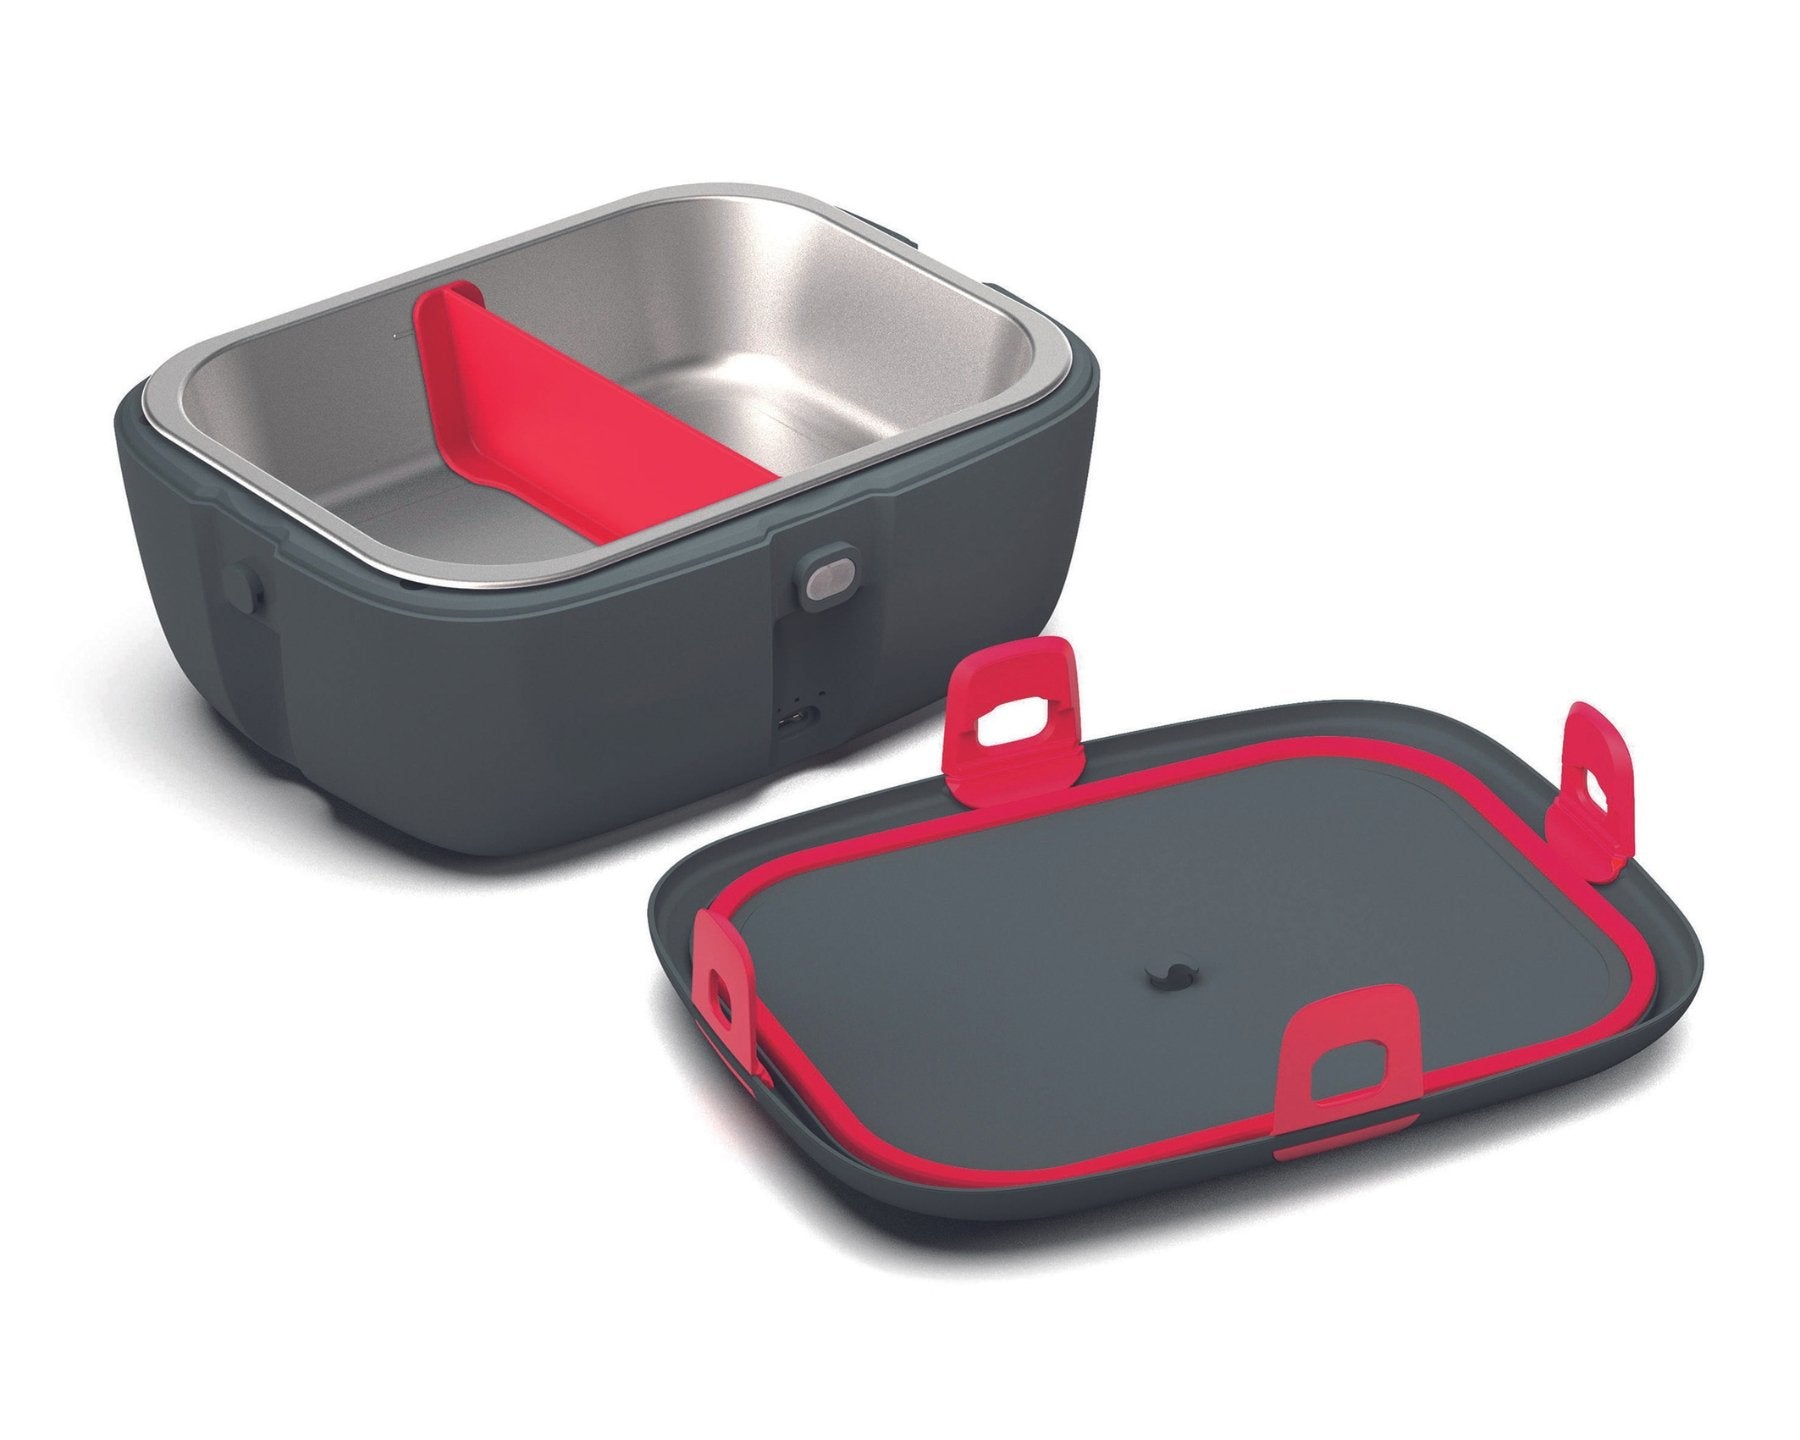 KOENIG HeatsBox go, Lunchbox mit Akku - kitchen-more.ch, kostenloser Versand in der ganzen Schweiz